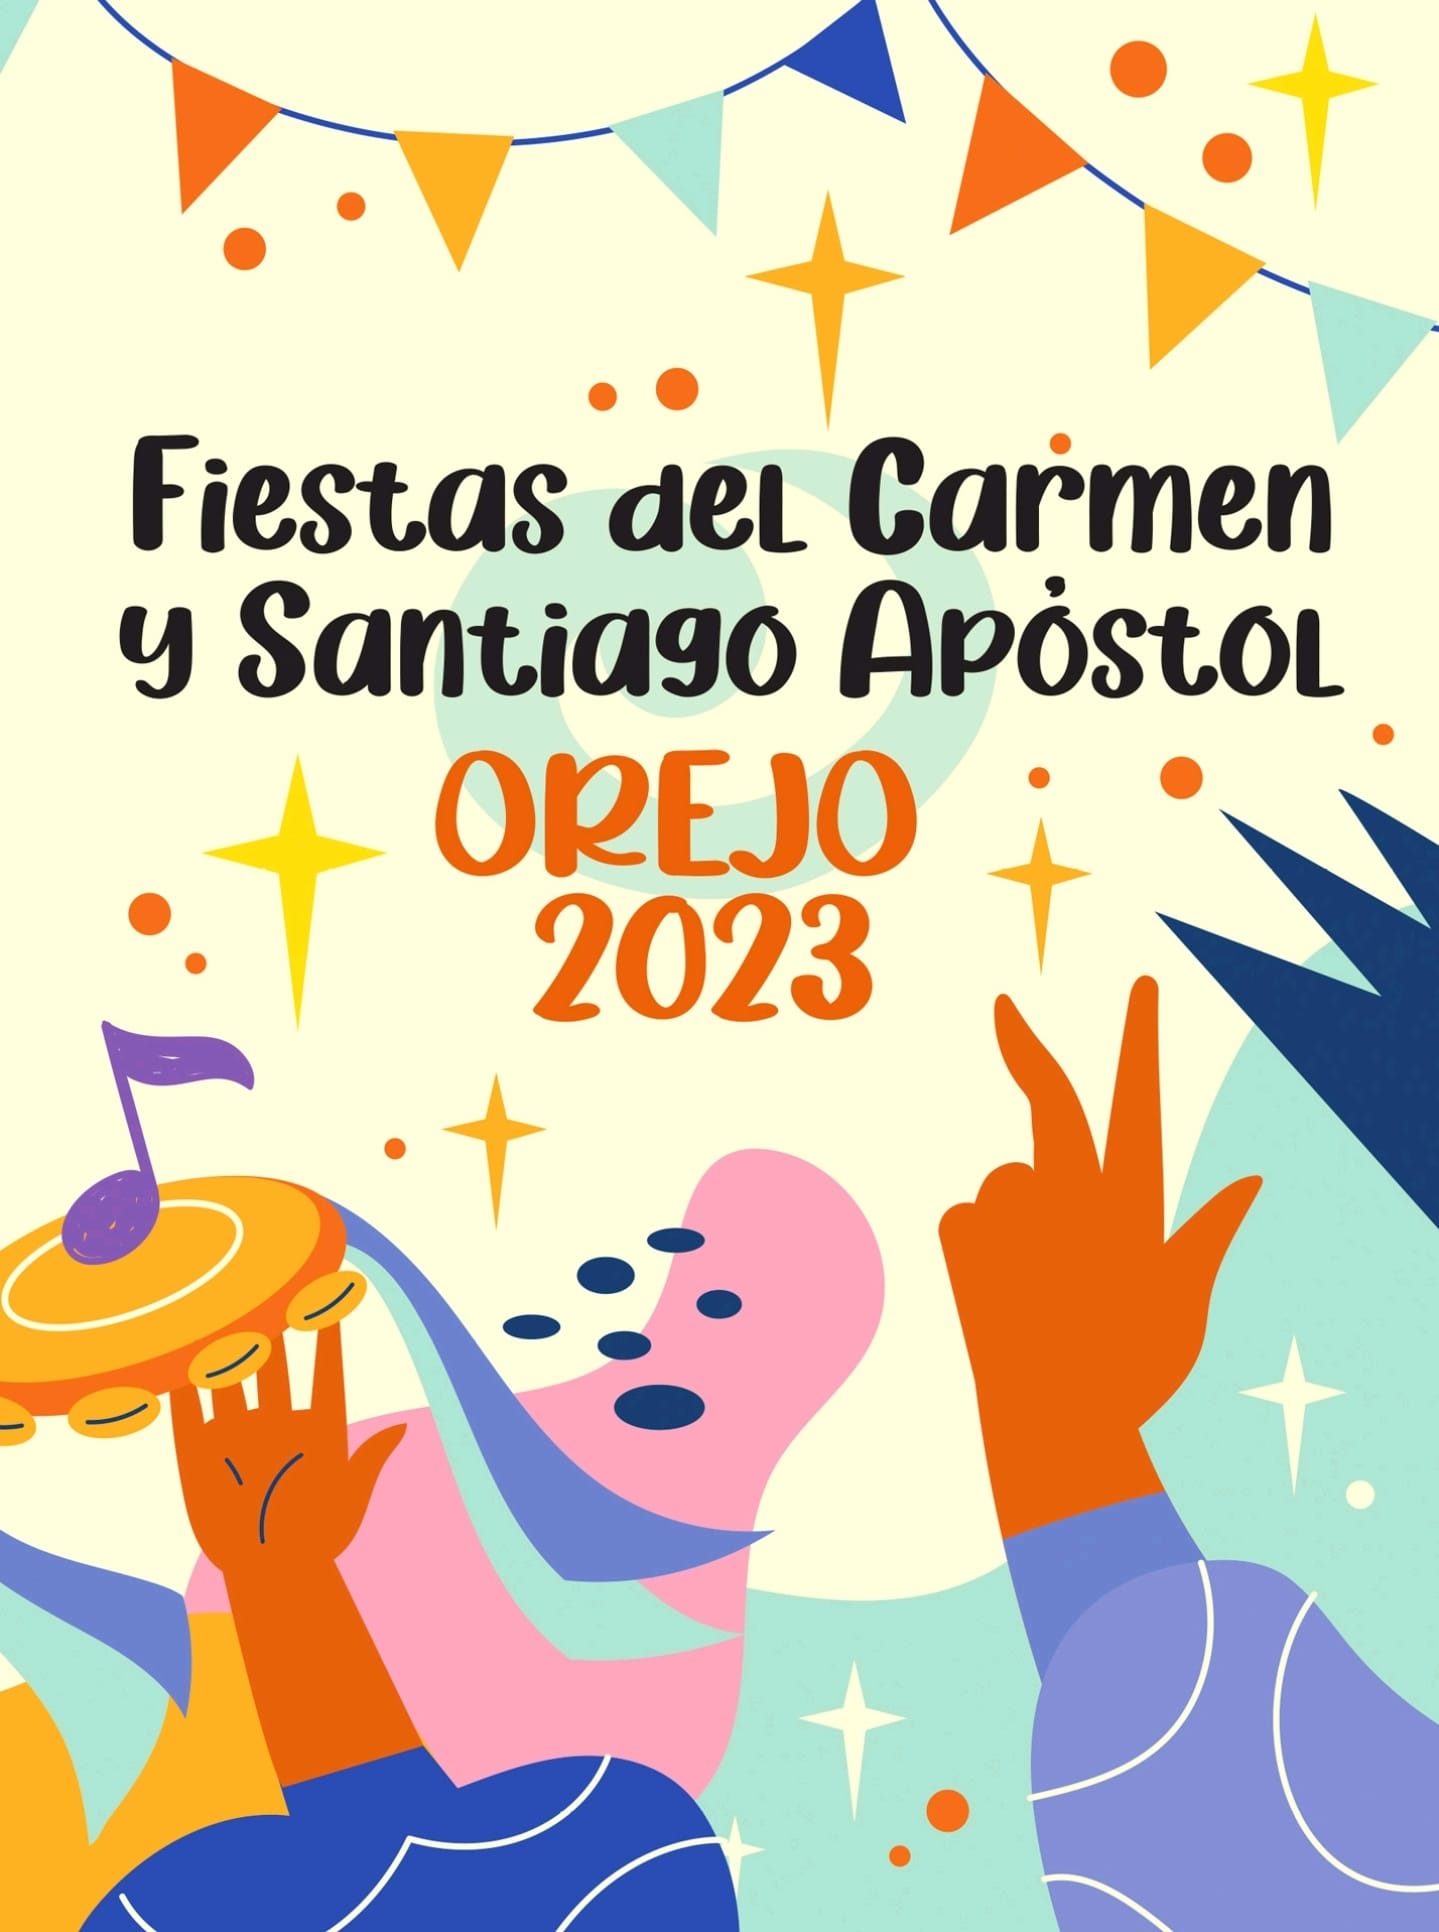 Fiestas del Carmen y Santiago Apóstol Orejo 2023